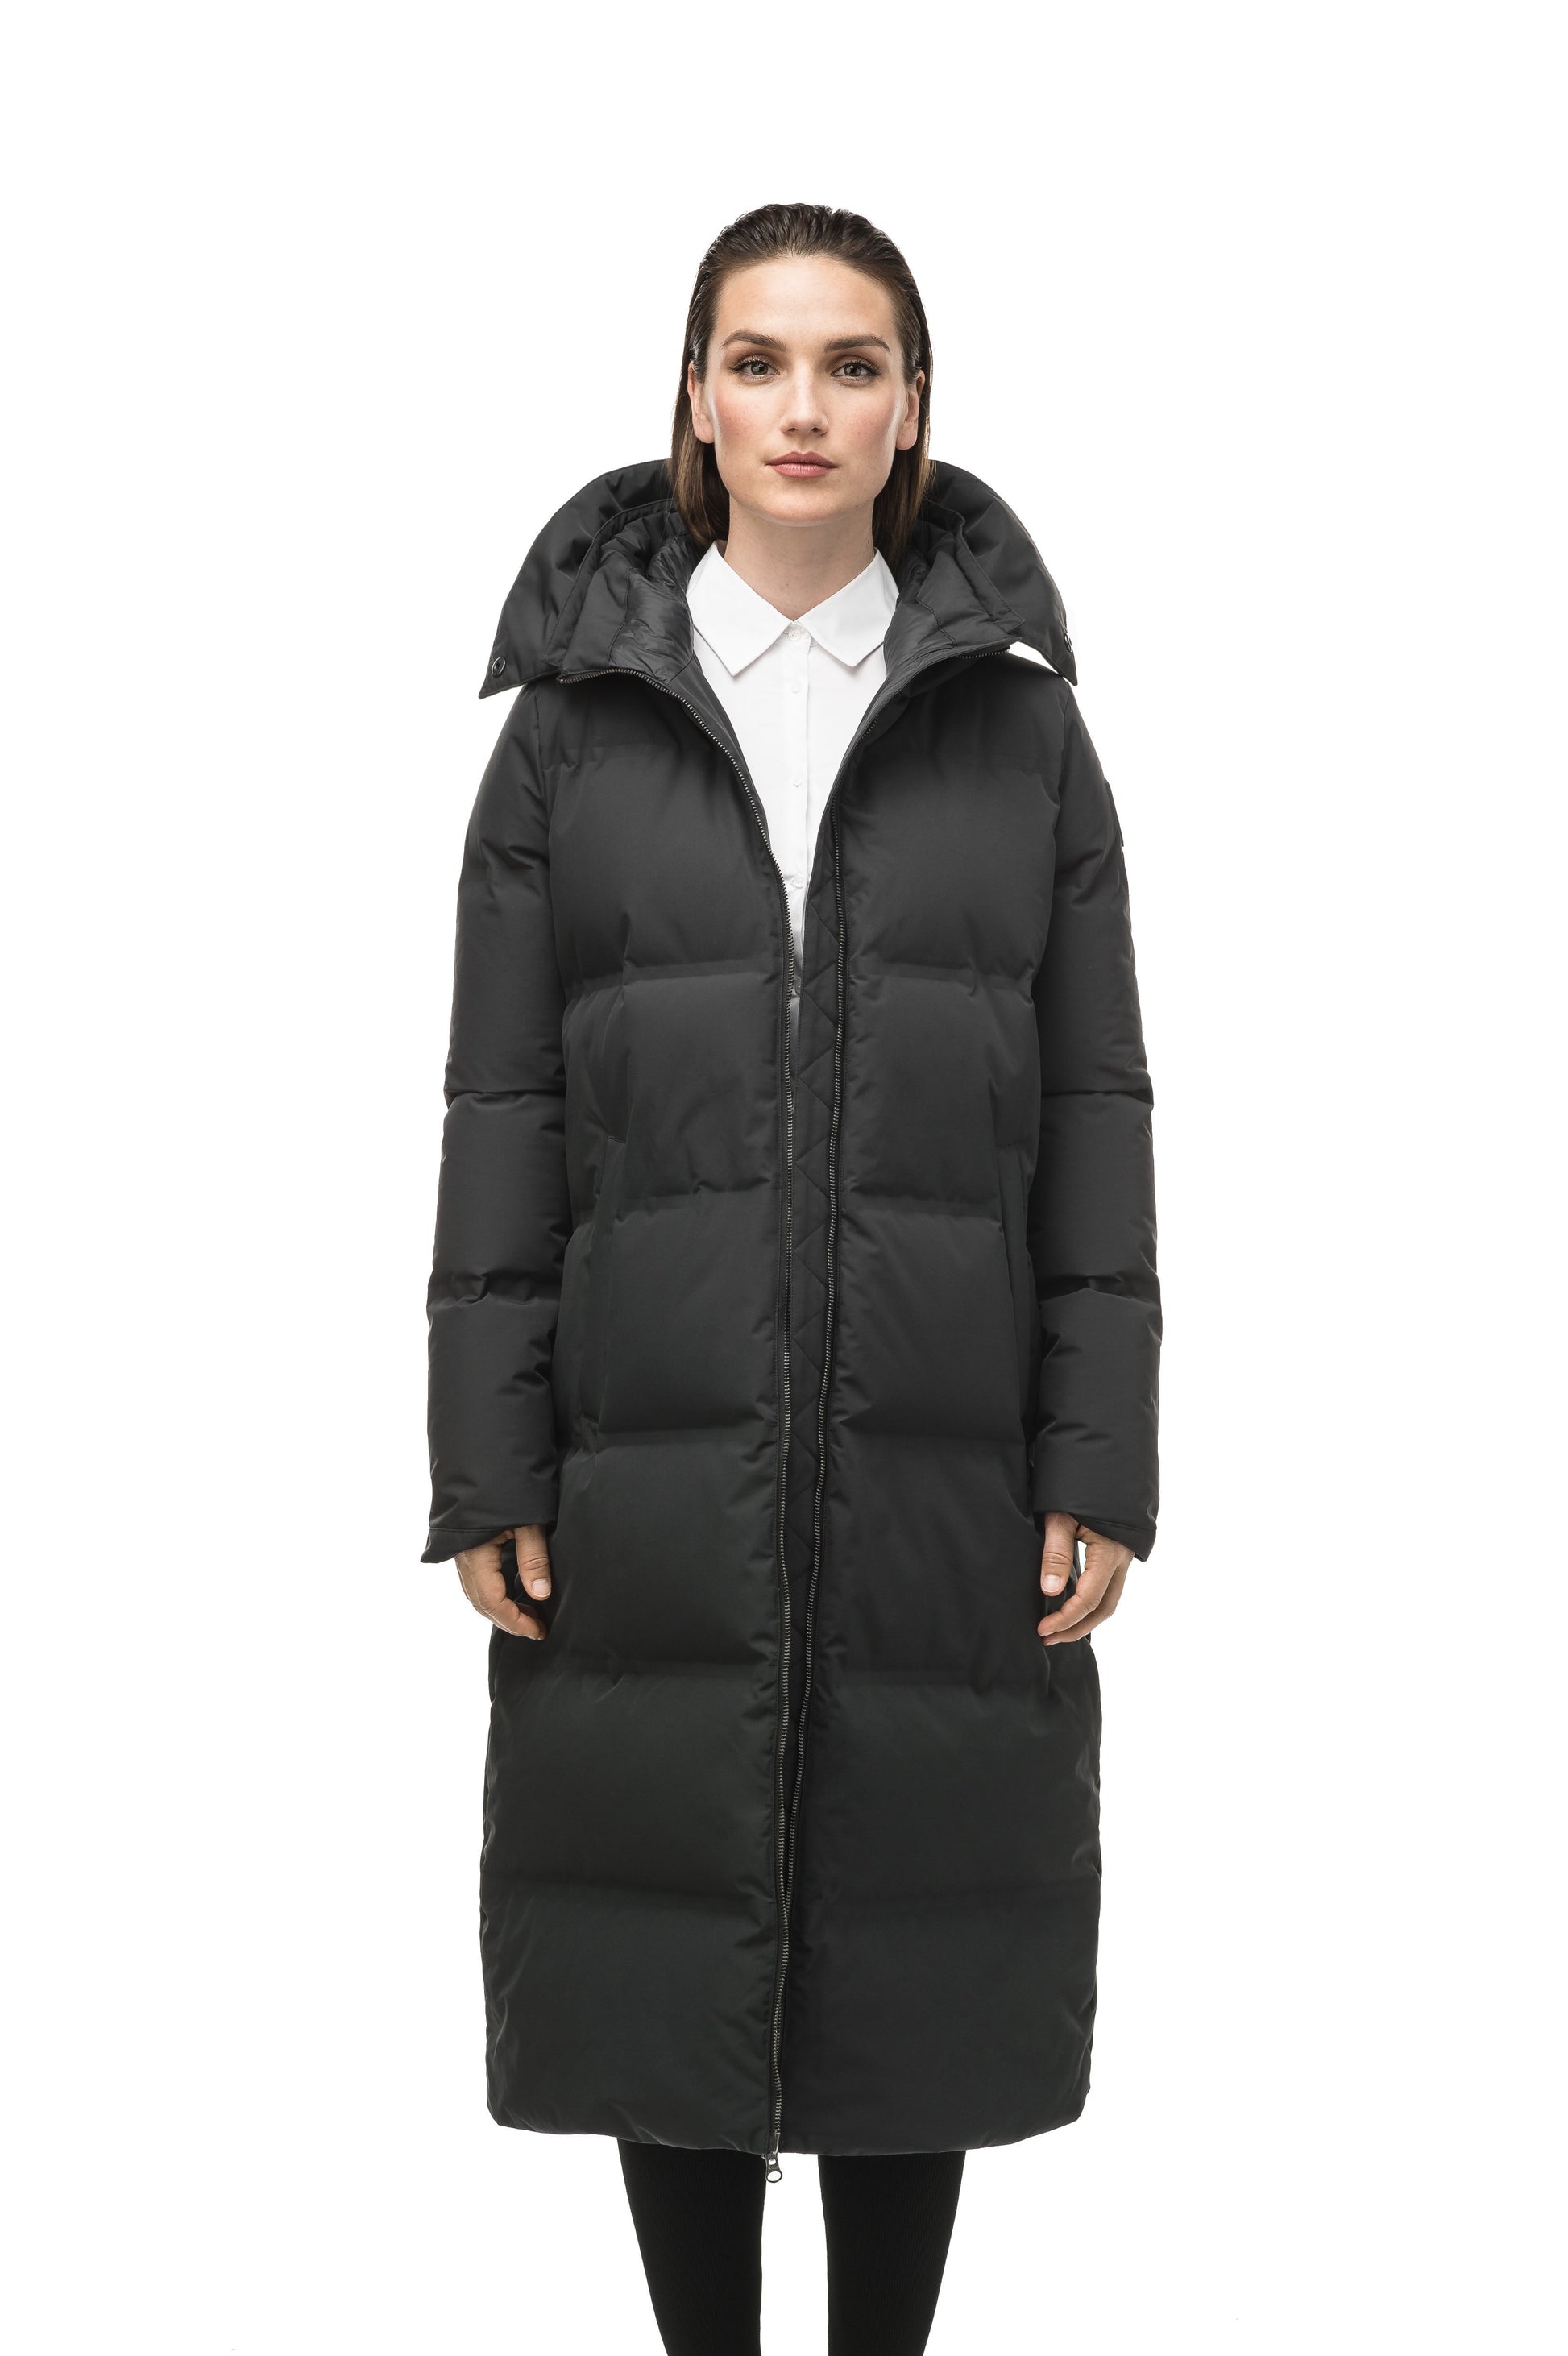 Women's ankle length puffer jacket with a minimalist modern design,ÃƒÆ’Ã†â€™ÃƒÂ¢Ã¢â€šÂ¬Ã…Â¡ÃƒÆ’Ã¢â‚¬Å¡Ãƒâ€šÃ‚Â featuring an exposed zipper, and seamless puffer channels in Black